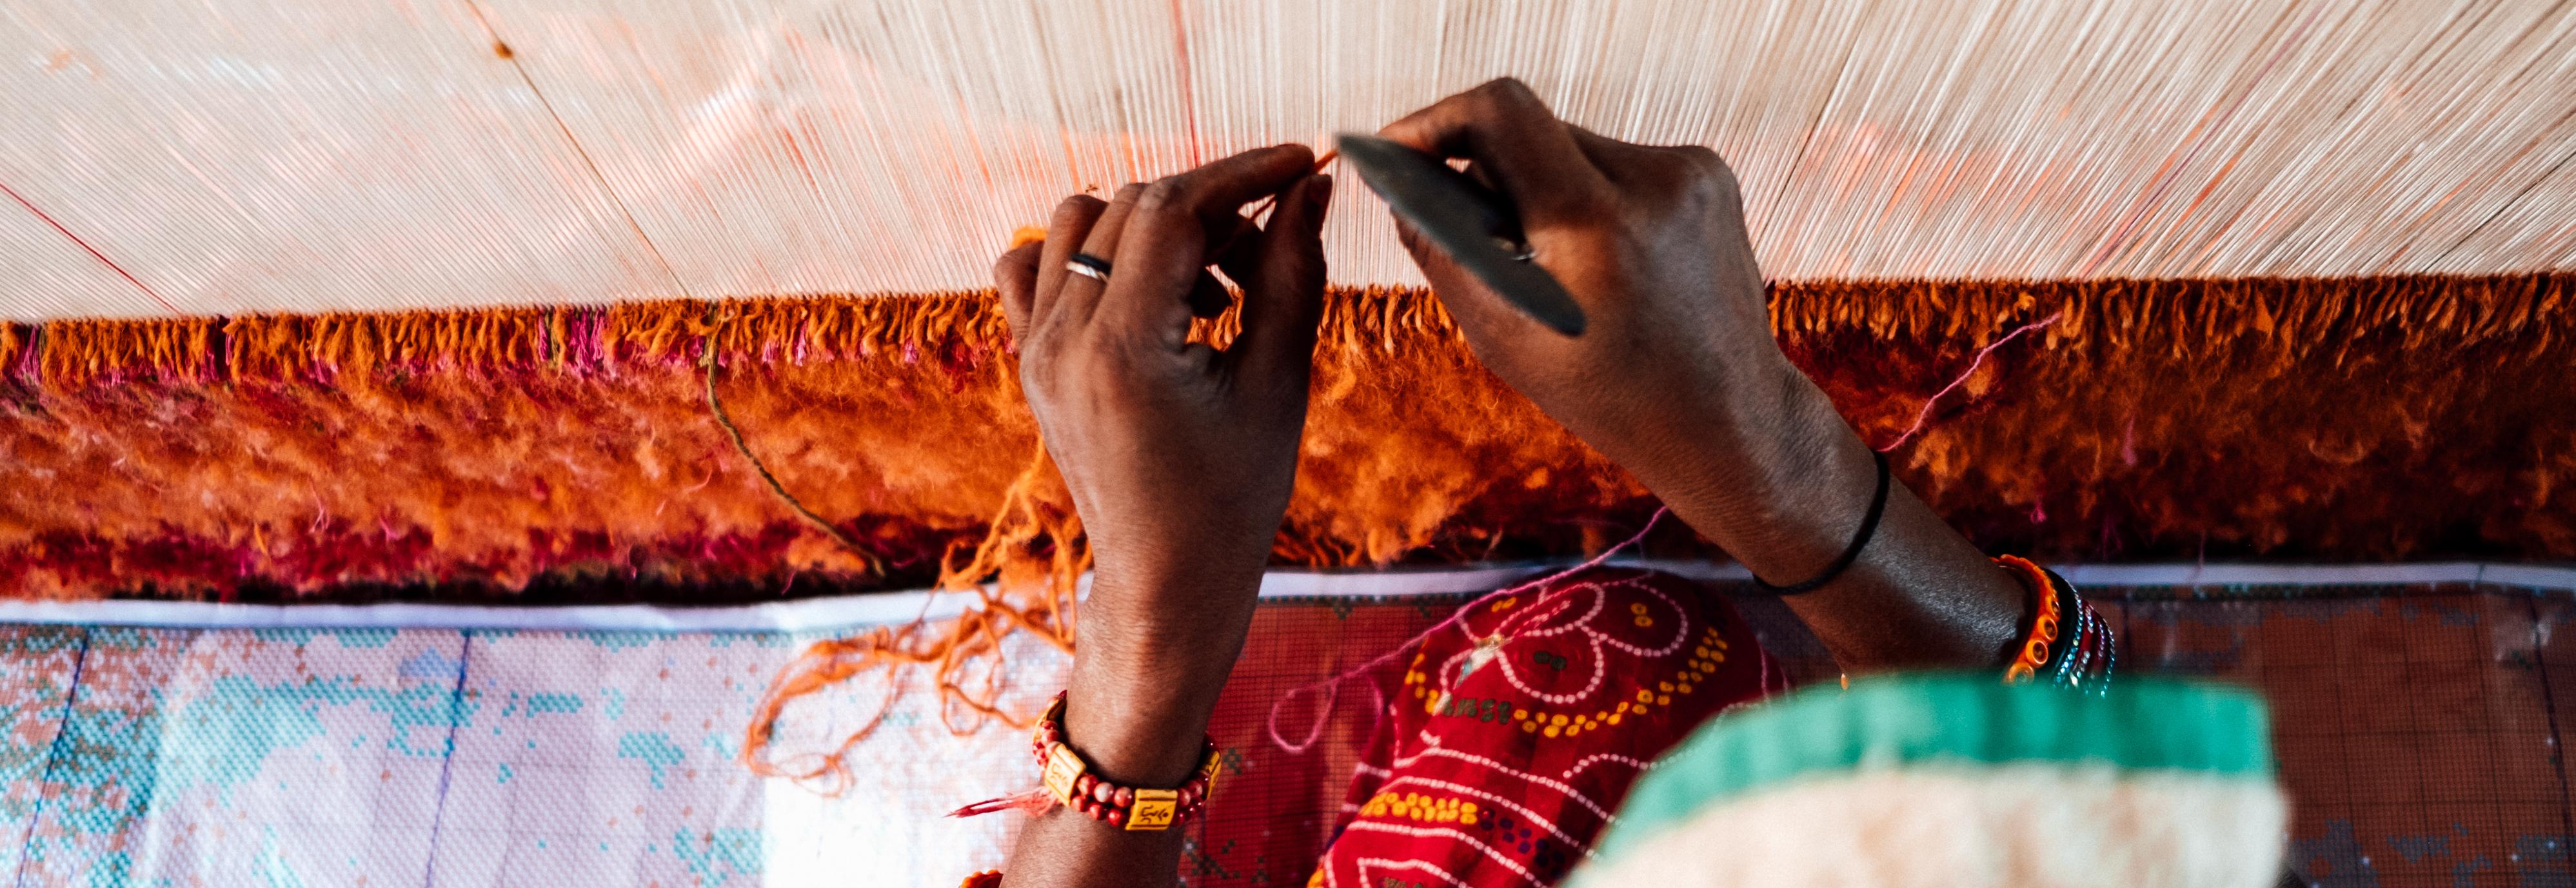 Hands weaving fabric